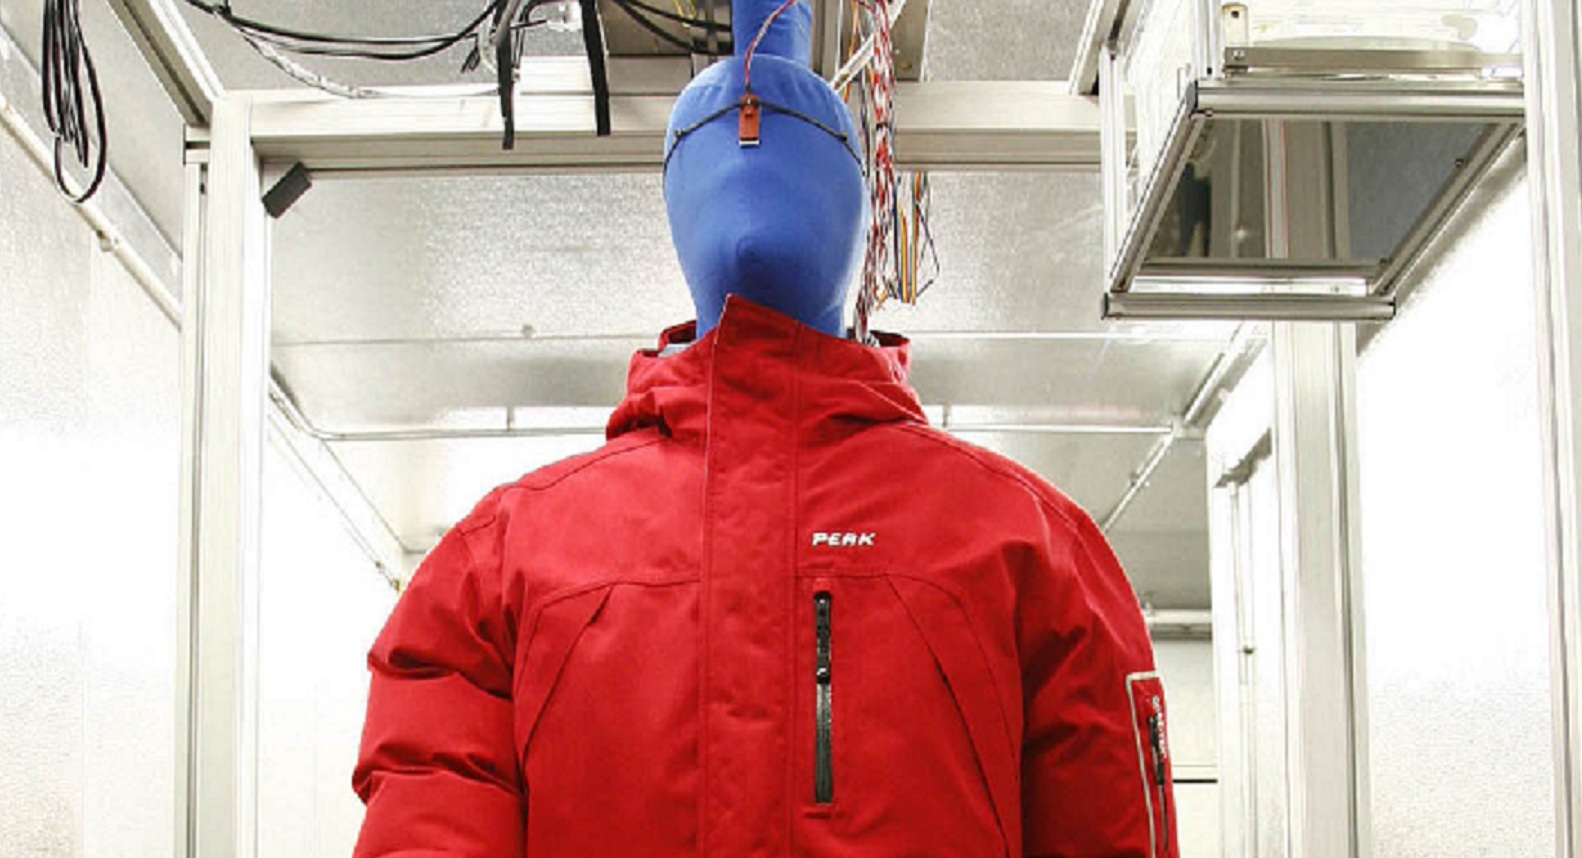 La nueva ropa integra su propio aire acondicionado. Fuente: Cornell.